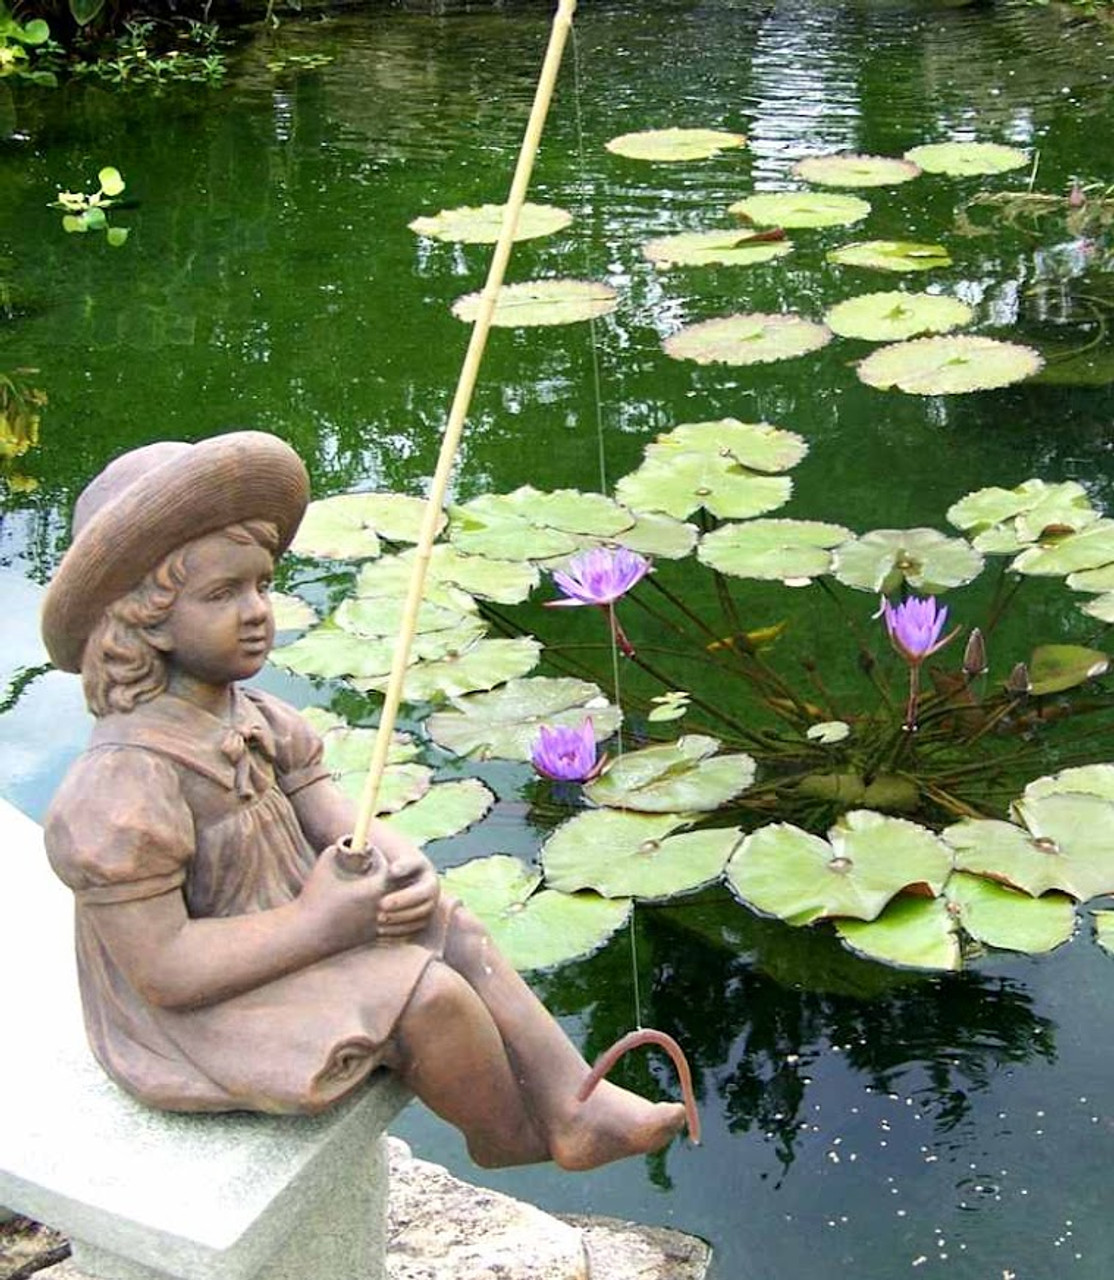 Fishing Girl Garden Statue Sculpture Figurine Outdoor Pond Pool